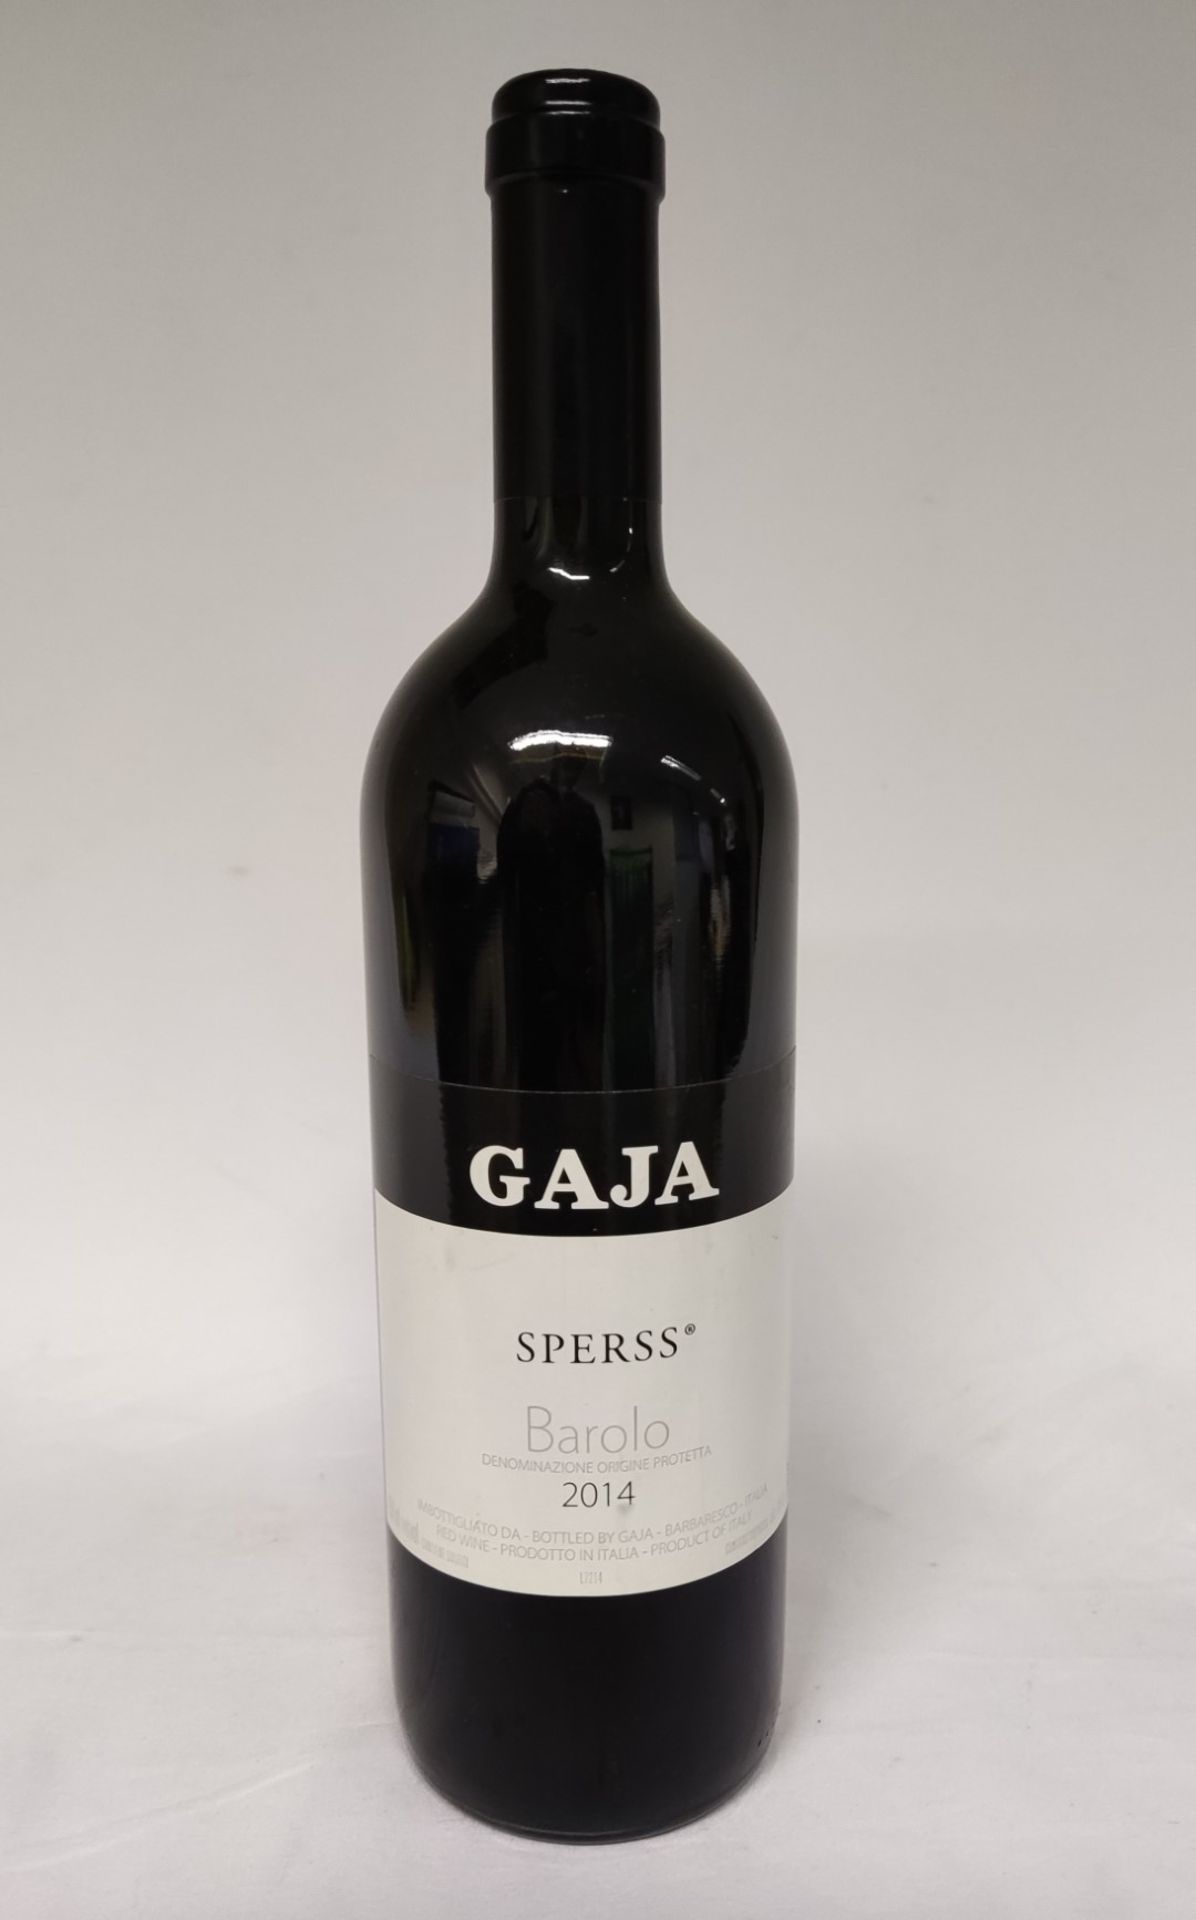 1 x Bottle of 2014 Barolo Sperss Gaja - Red Wine - RRP £205